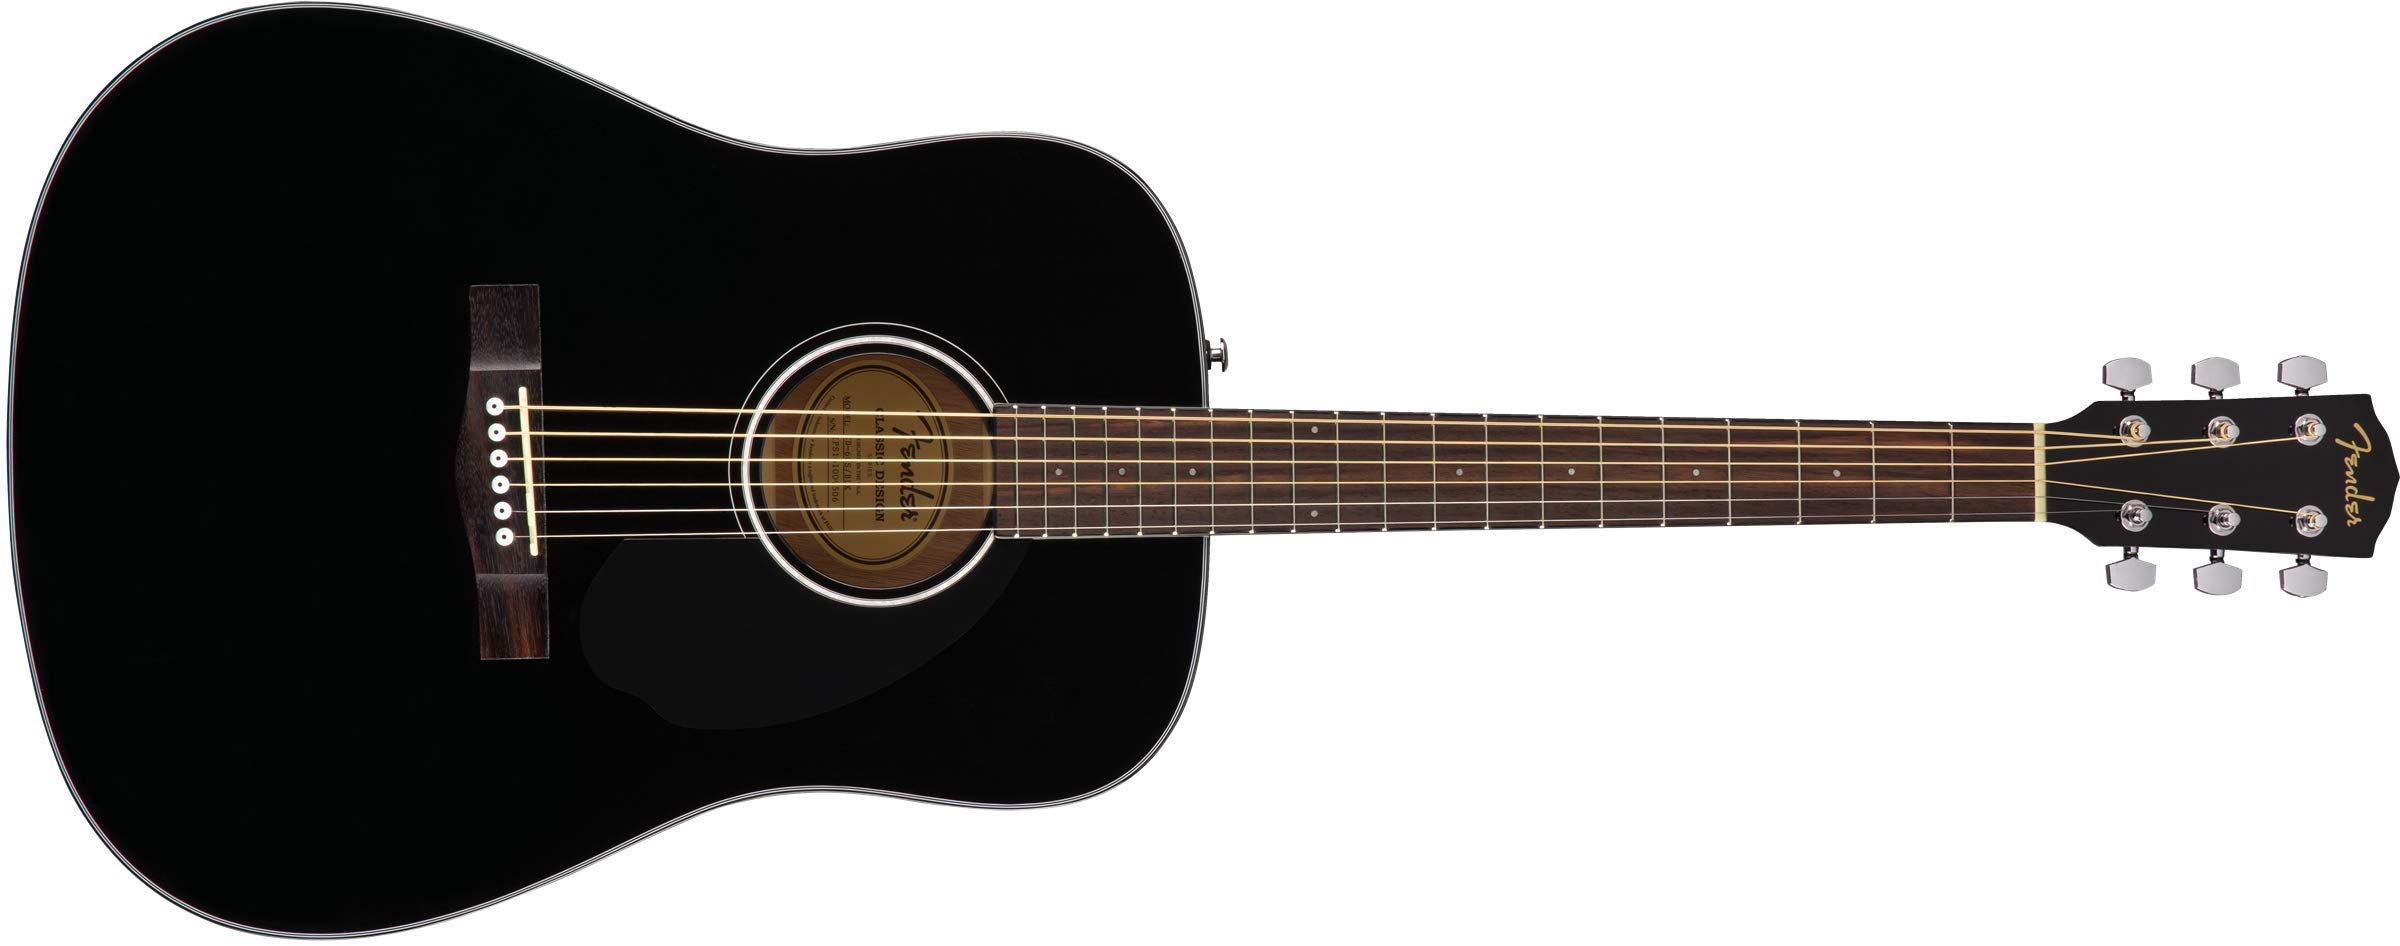 Fender CD-60S ドレッドノート アコースティックギター、ウォルナット指板、ブラック